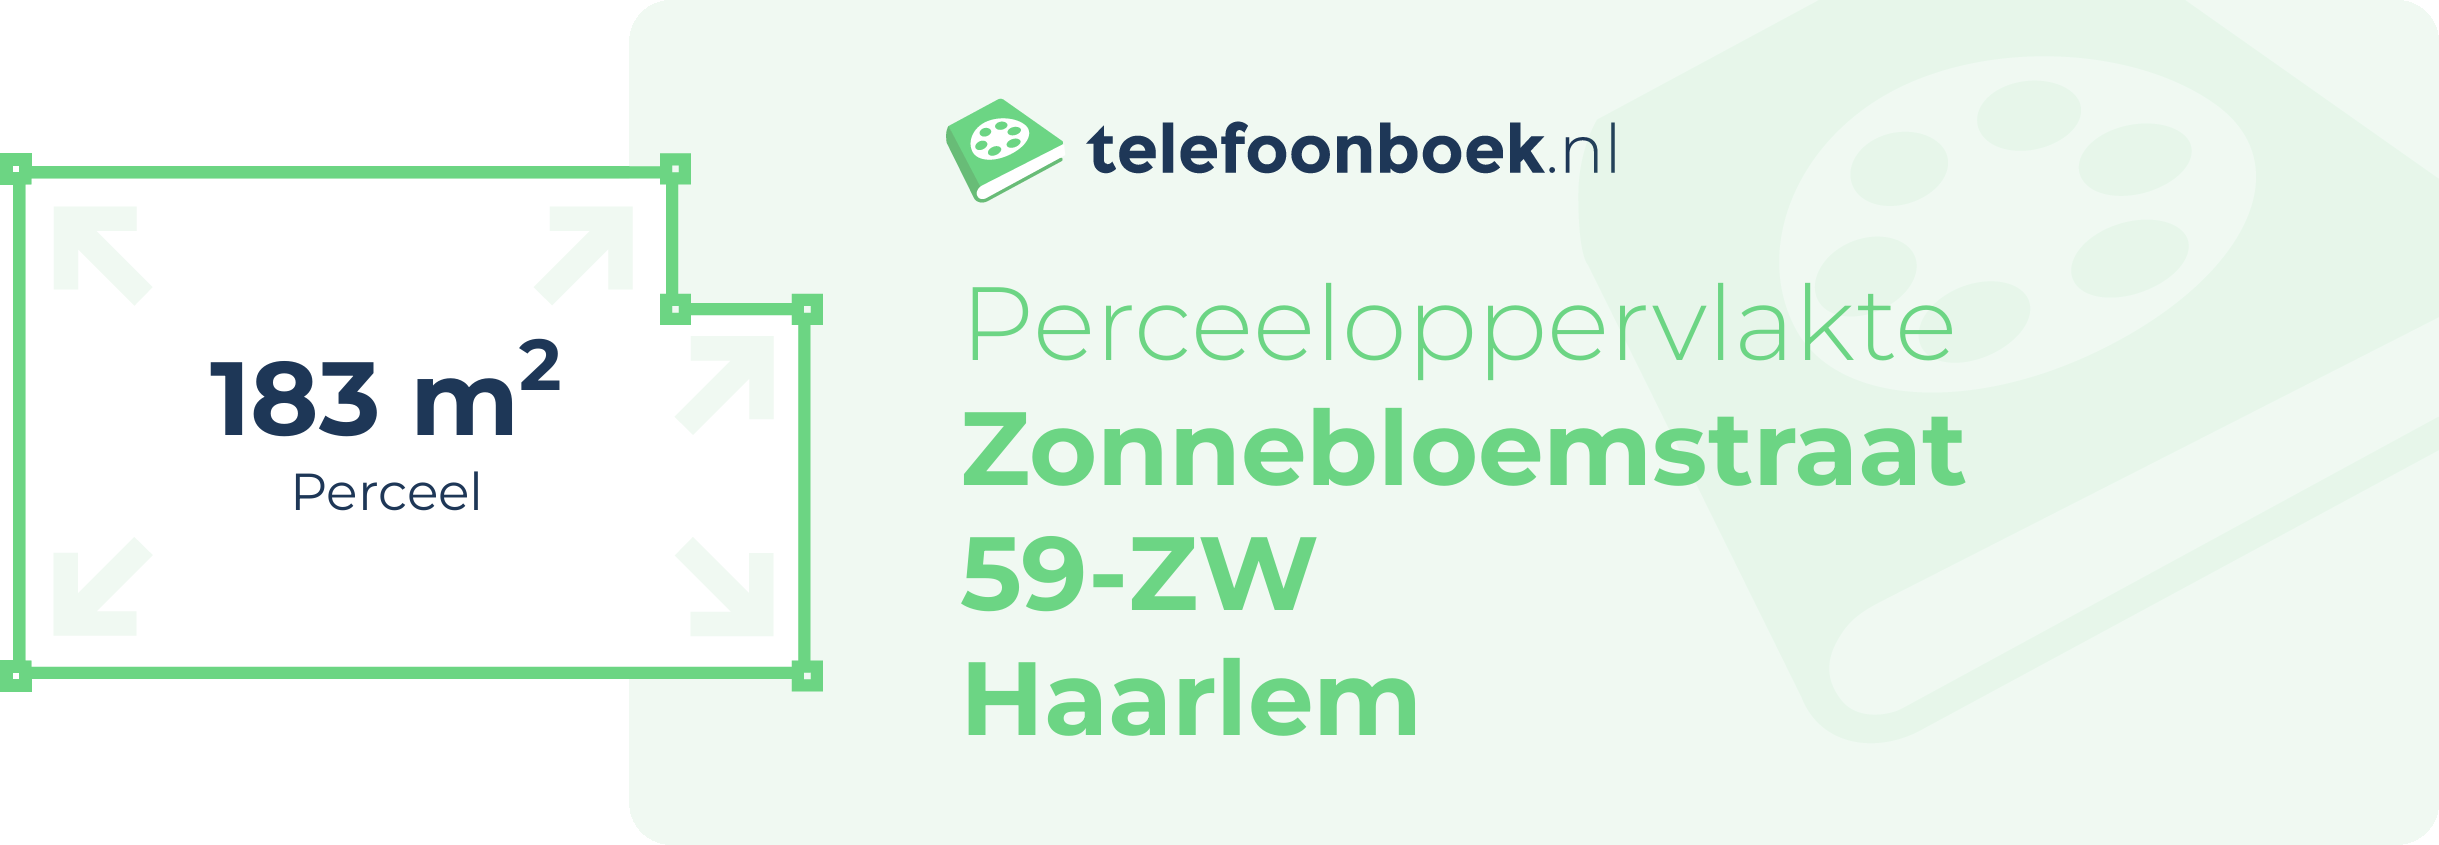 Perceeloppervlakte Zonnebloemstraat 59-ZW Haarlem